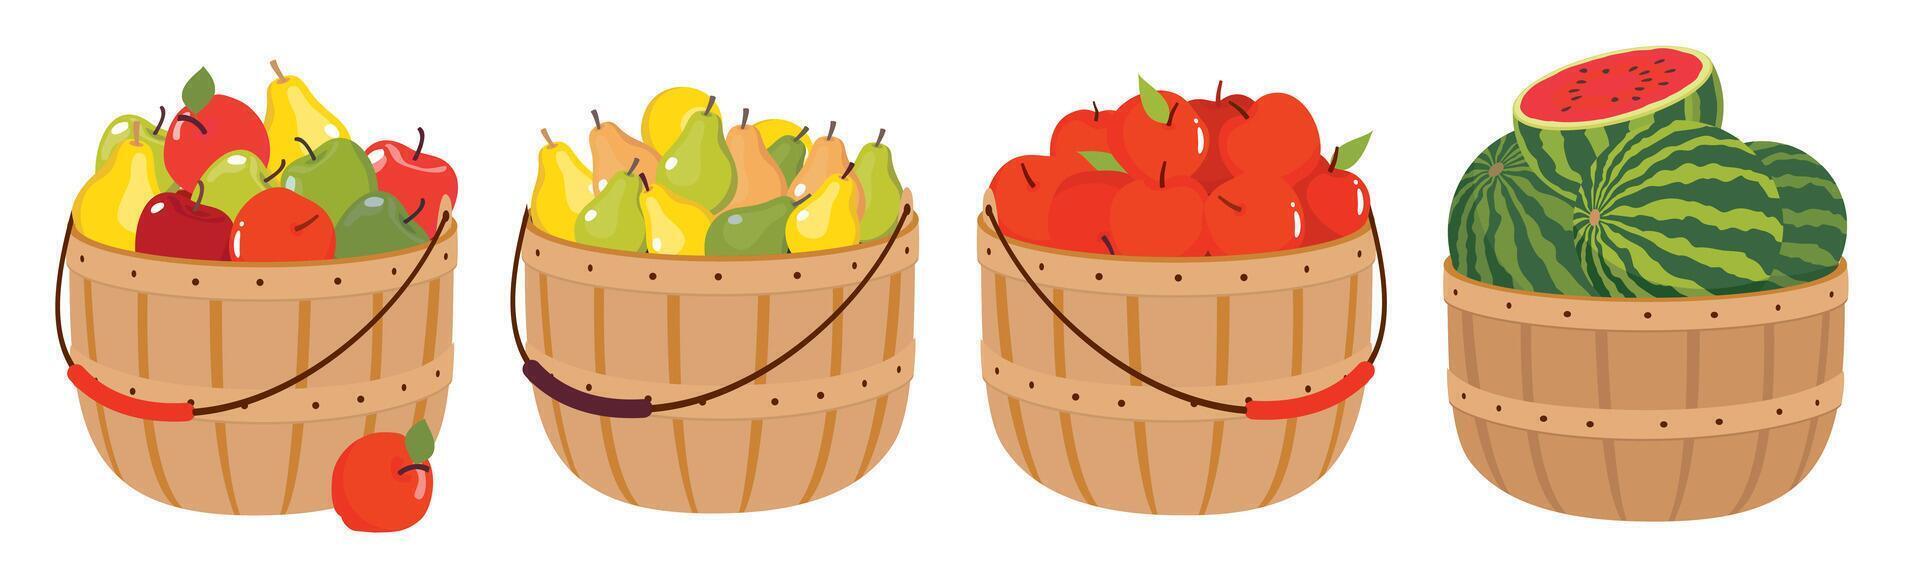 un conjunto de Fruta cestas con un cosecha de manzanas, peras, sandías peras, manzanas, sandias en mimbre cestas con un manejar. agricultores cosecha de frutas en un envase. vector ilustrado clipart.